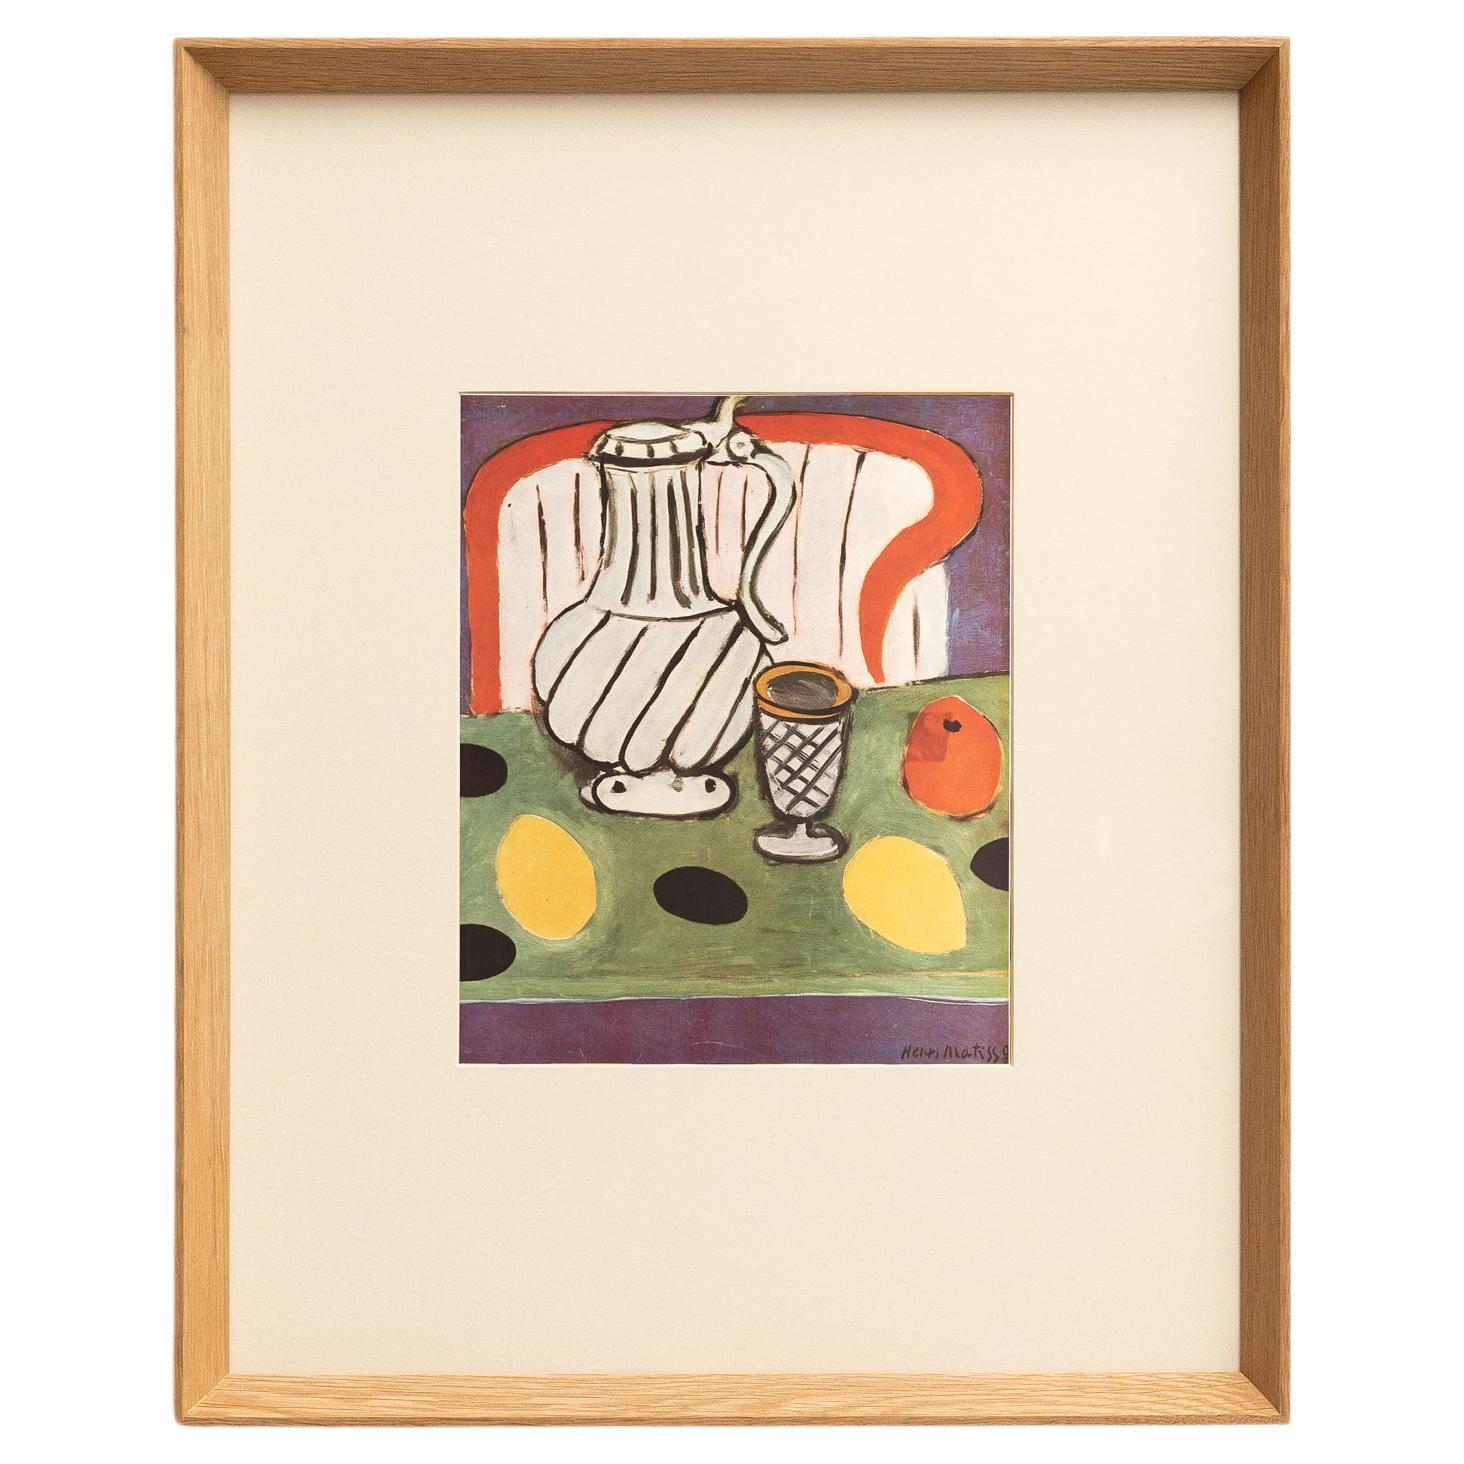 Rara litografía en color: Un vistazo a la maestría artística de Matisse